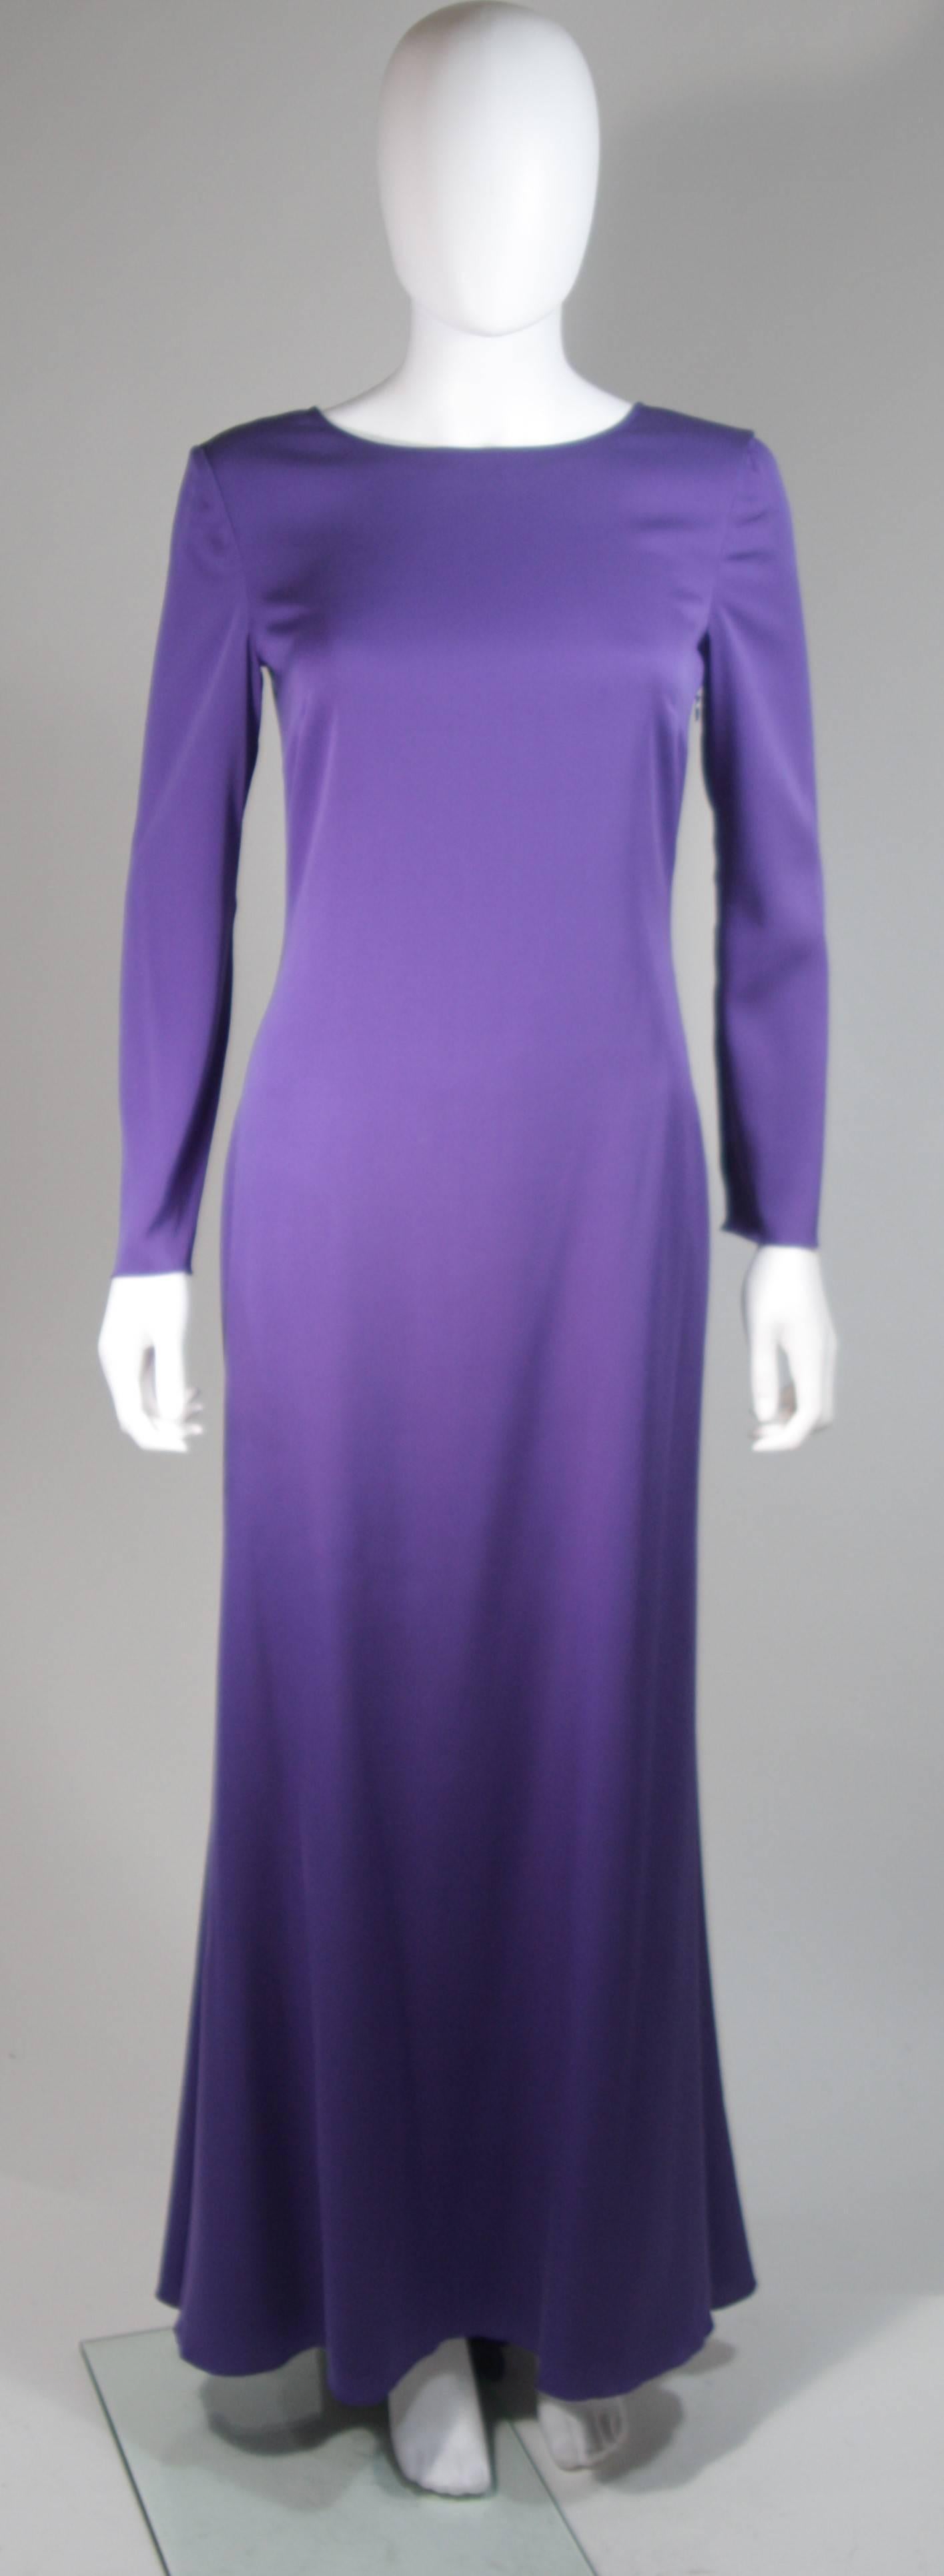 Dieses Kleid von Emilio Pucci ist aus strahlend weicher violetter Seide gefertigt. Der klassische langärmelige Stil wird durch einen exquisiten offenen Rücken modernisiert. Es gibt einen seitlichen Reißverschluss und einen Knopf in der Mitte des